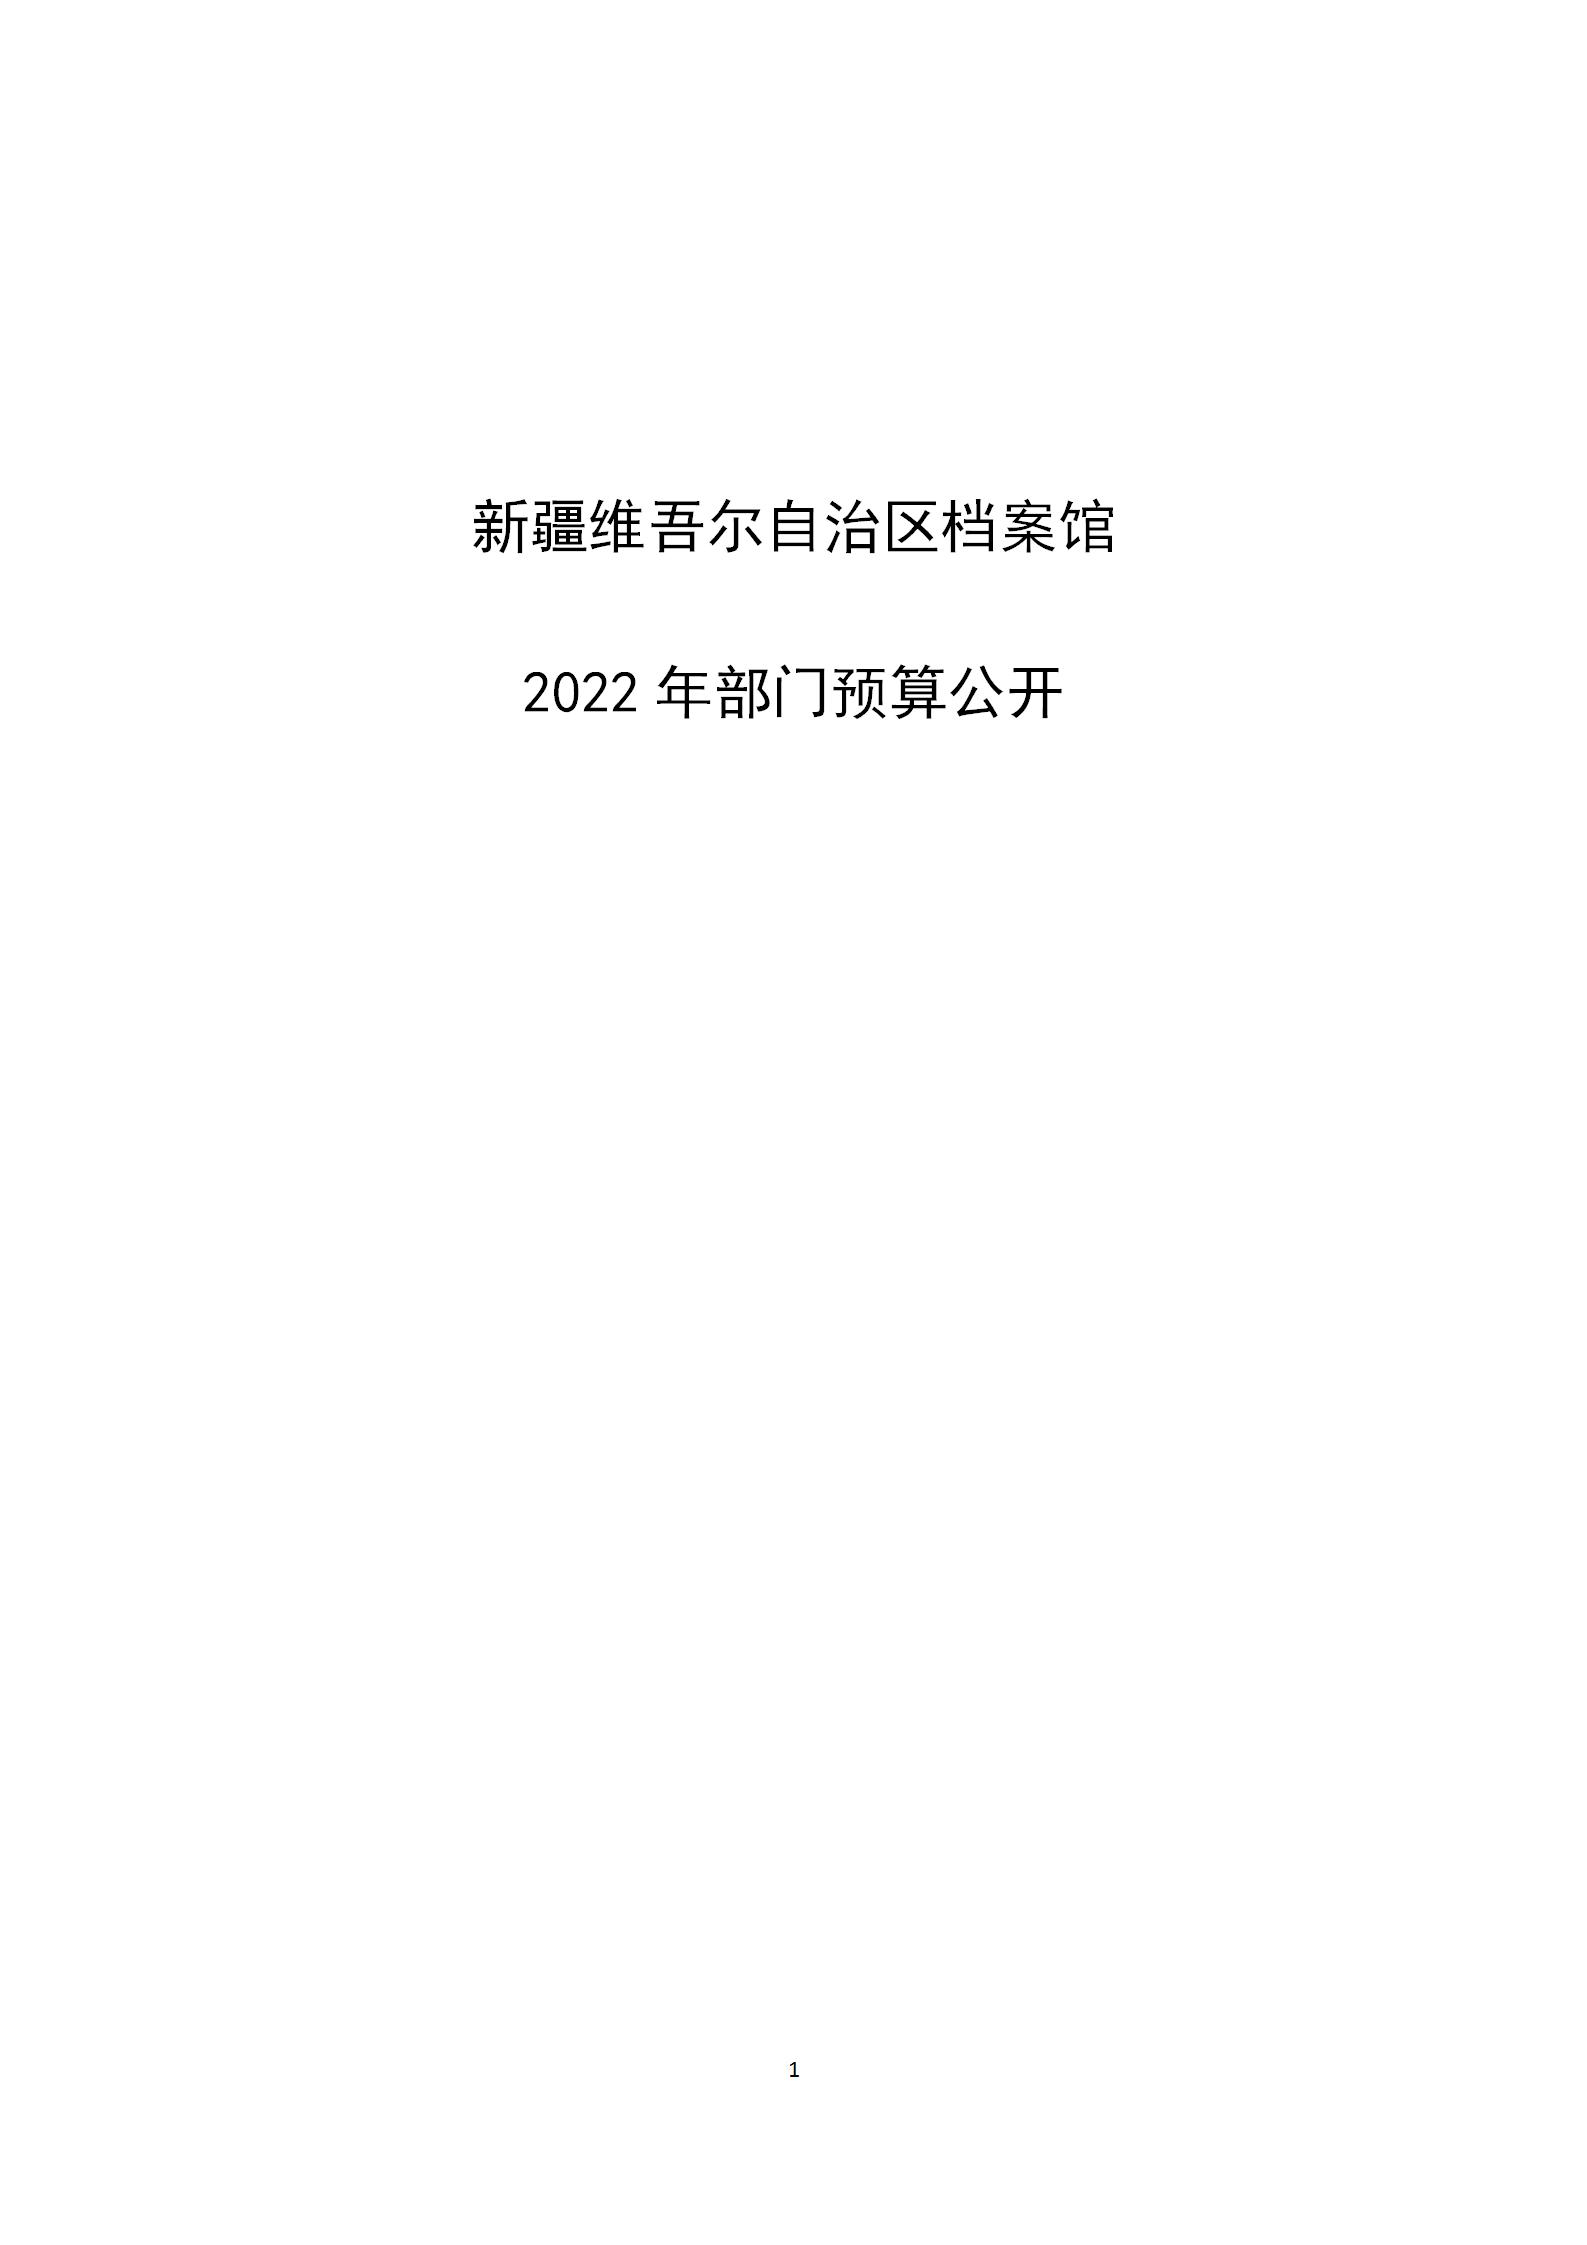 【新疆维吾尔自治区档案馆】【C】部门预算公开报告编写_01.jpg